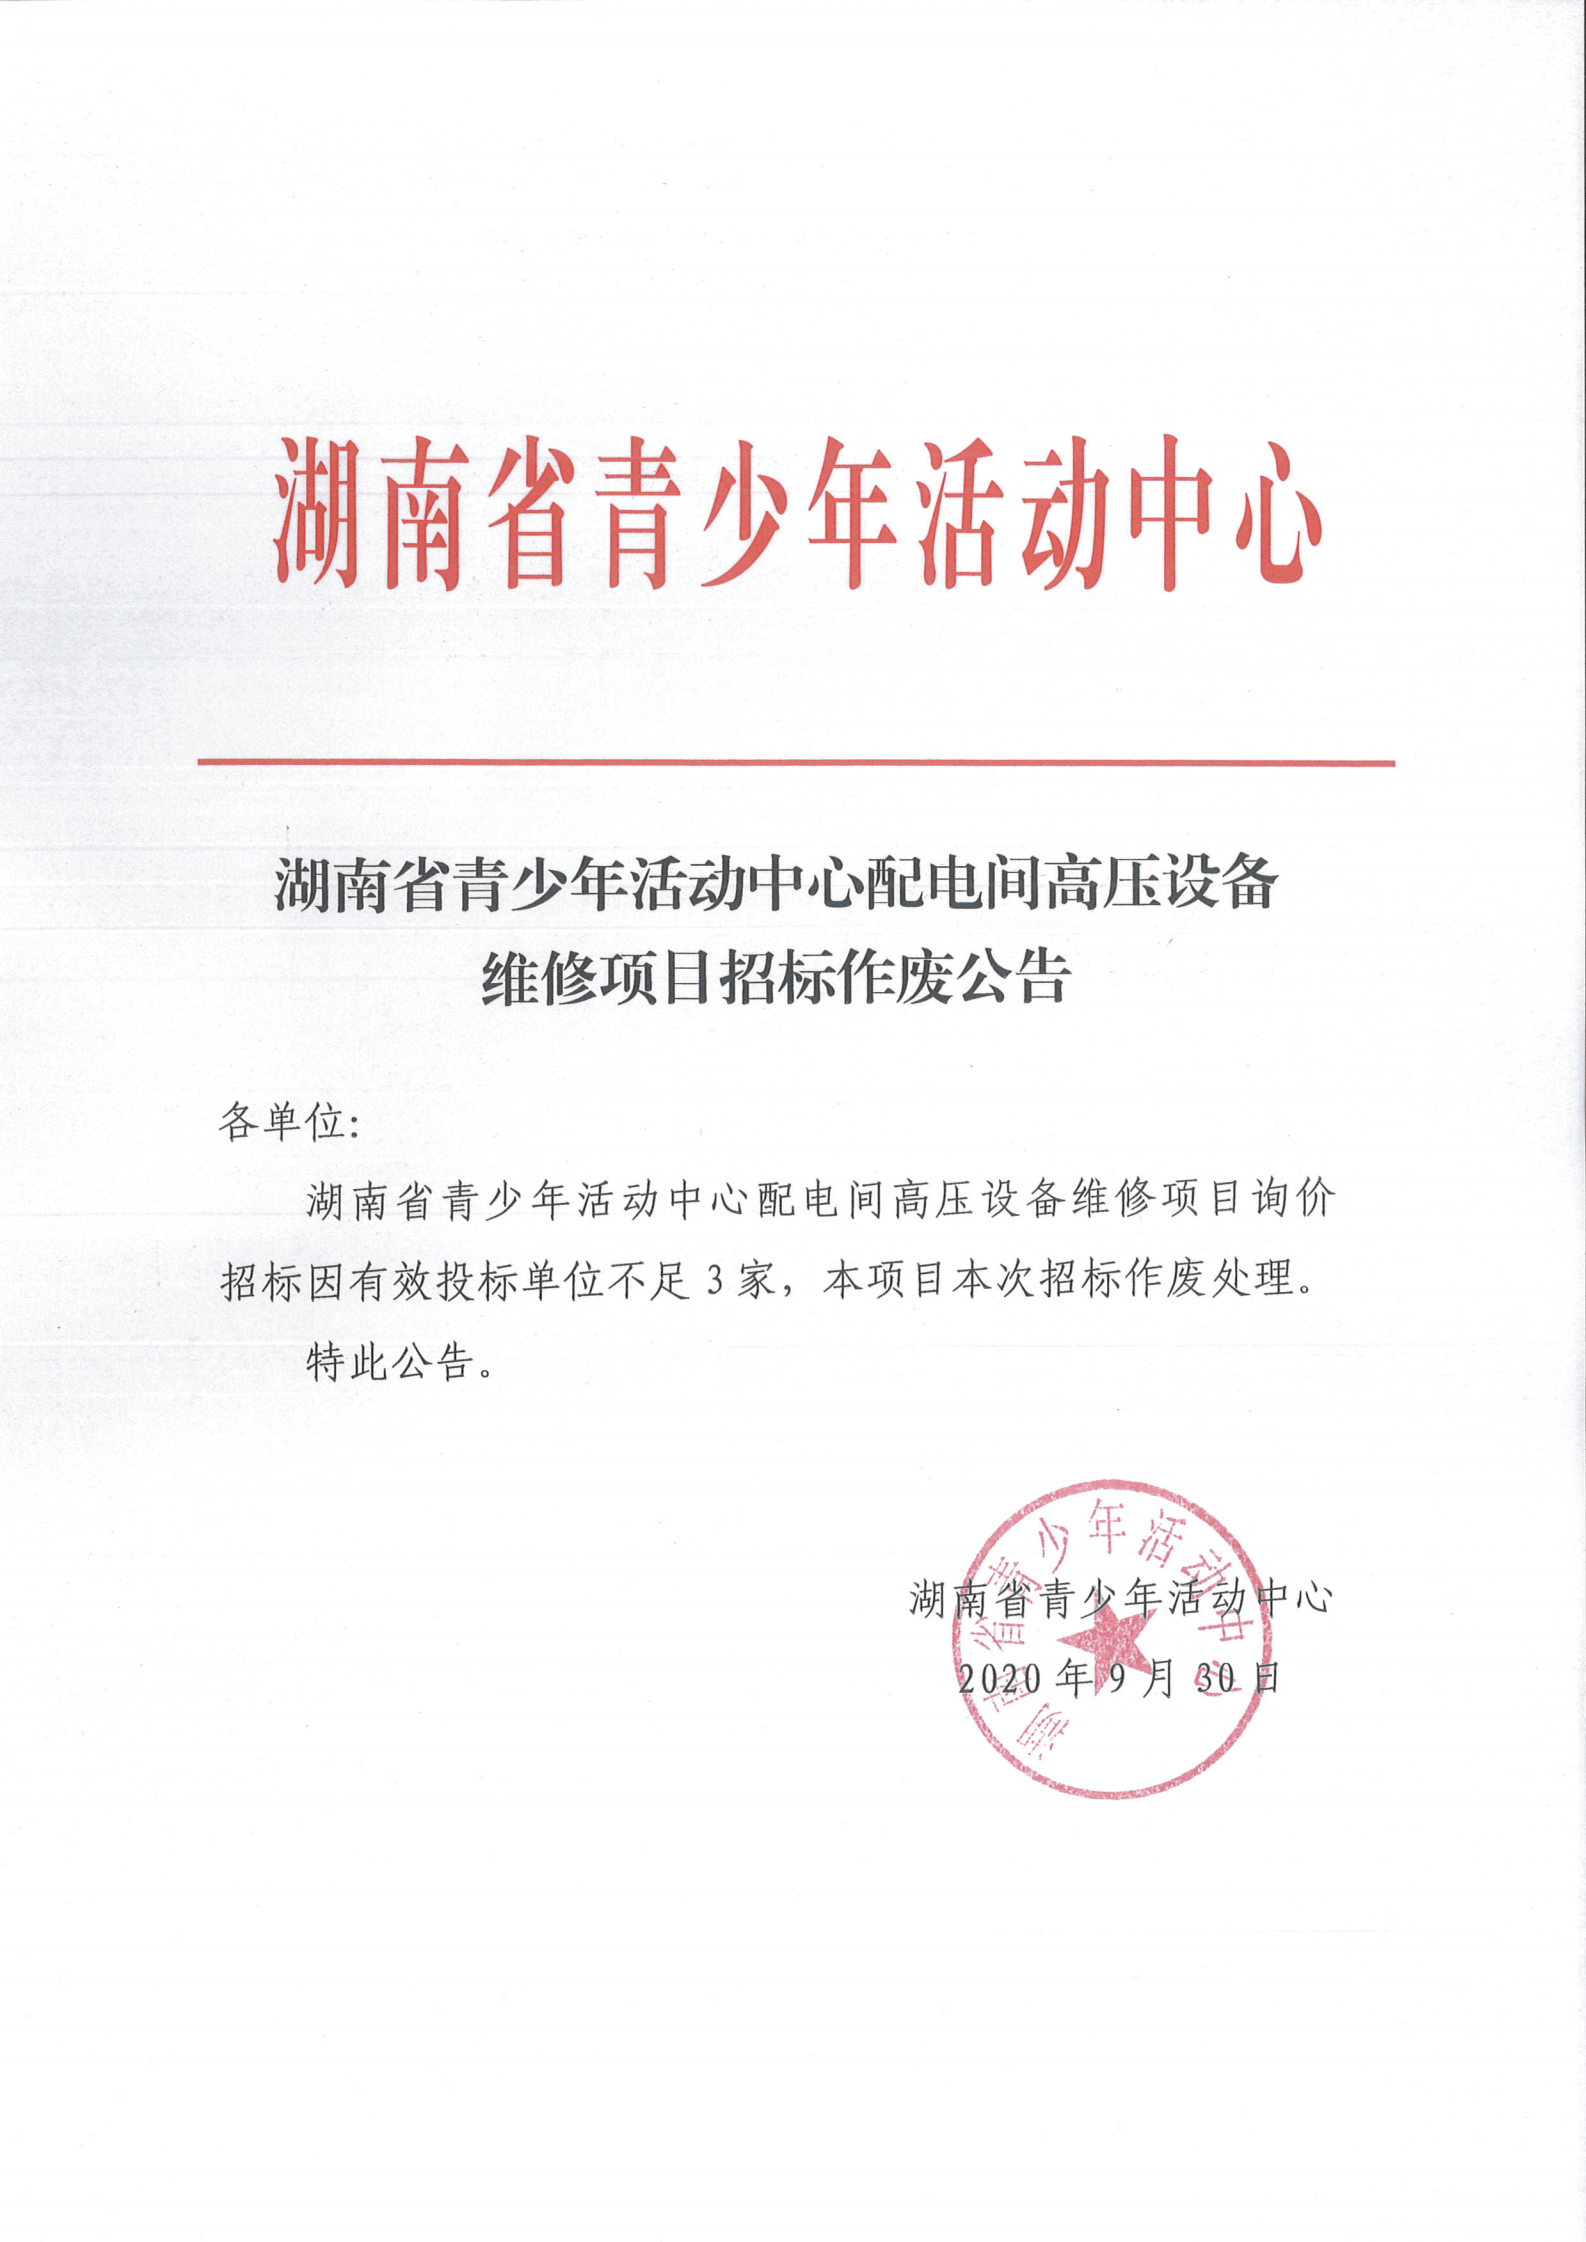 湖南省青少年活动中心配电间高压设备维修项目招标作废公告_00.png